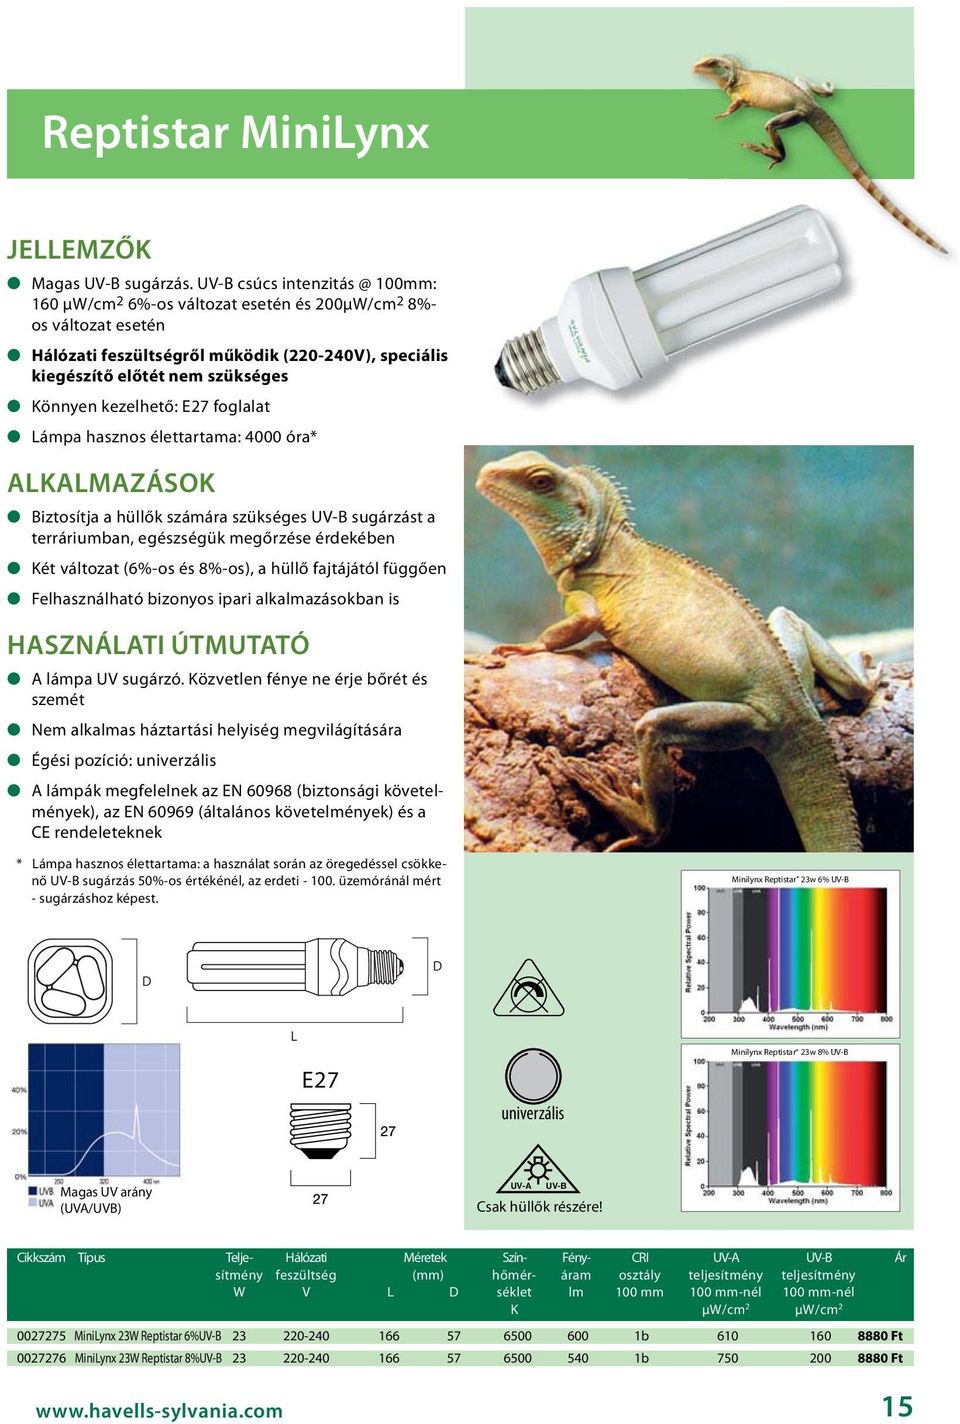 kezelhető: E27 foglalat Lámpa hasznos élettartama: 4000 óra* Biztosítja a hüllők számára szükséges UV-B sugárzást a terráriumban, egészségük megőrzése érdekében Két változat (6%-os és 8%-os), a hüllő